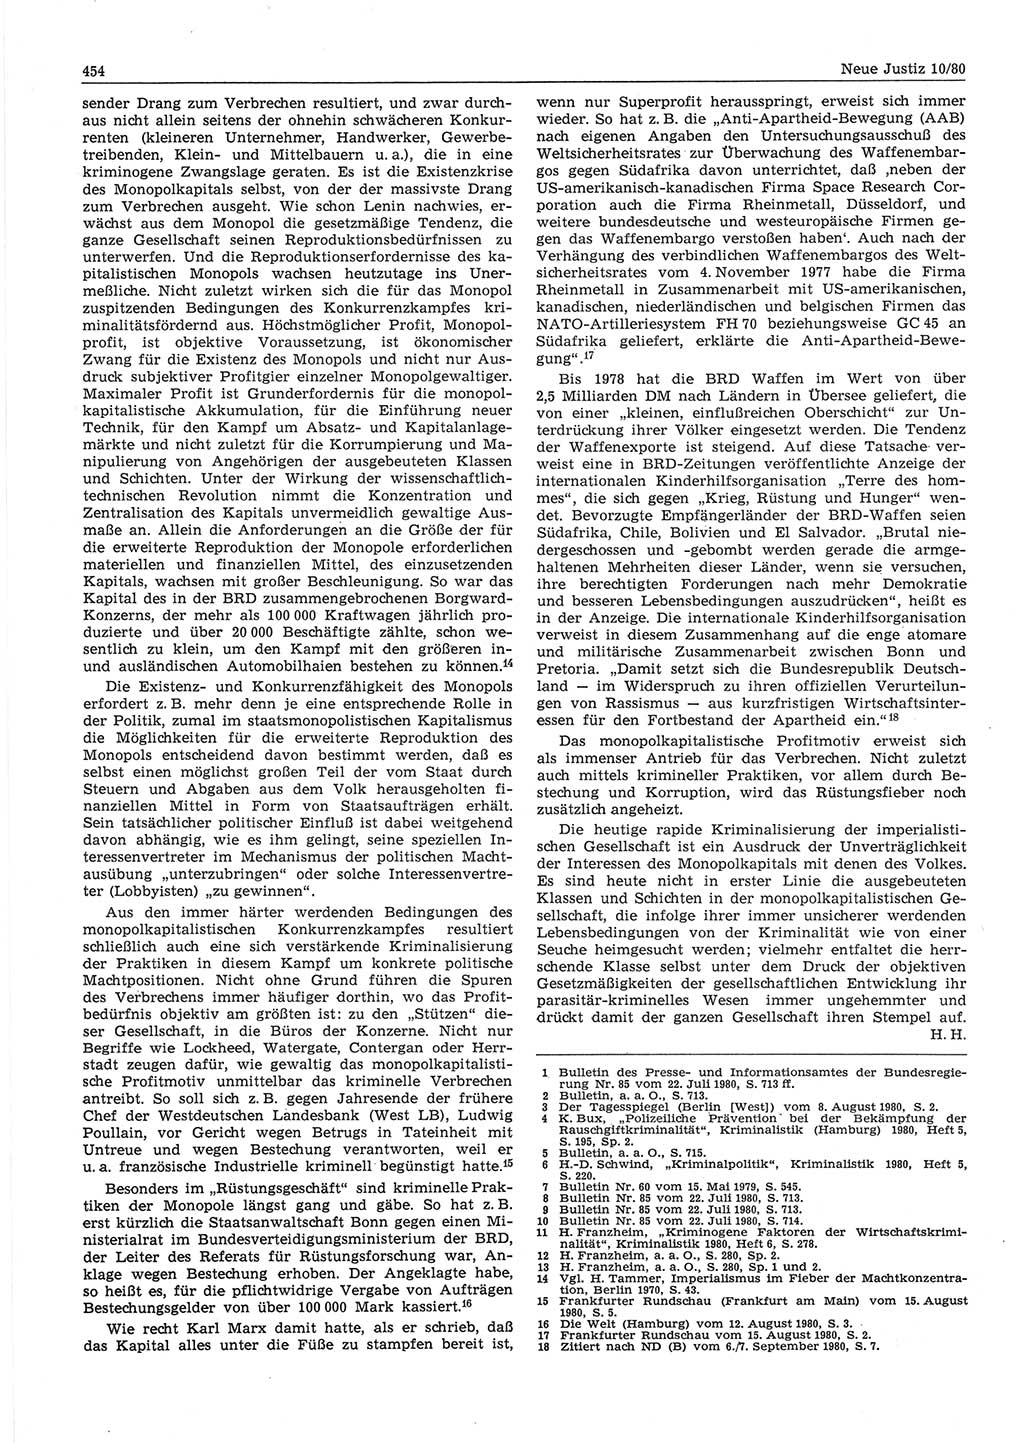 Neue Justiz (NJ), Zeitschrift für sozialistisches Recht und Gesetzlichkeit [Deutsche Demokratische Republik (DDR)], 34. Jahrgang 1980, Seite 454 (NJ DDR 1980, S. 454)